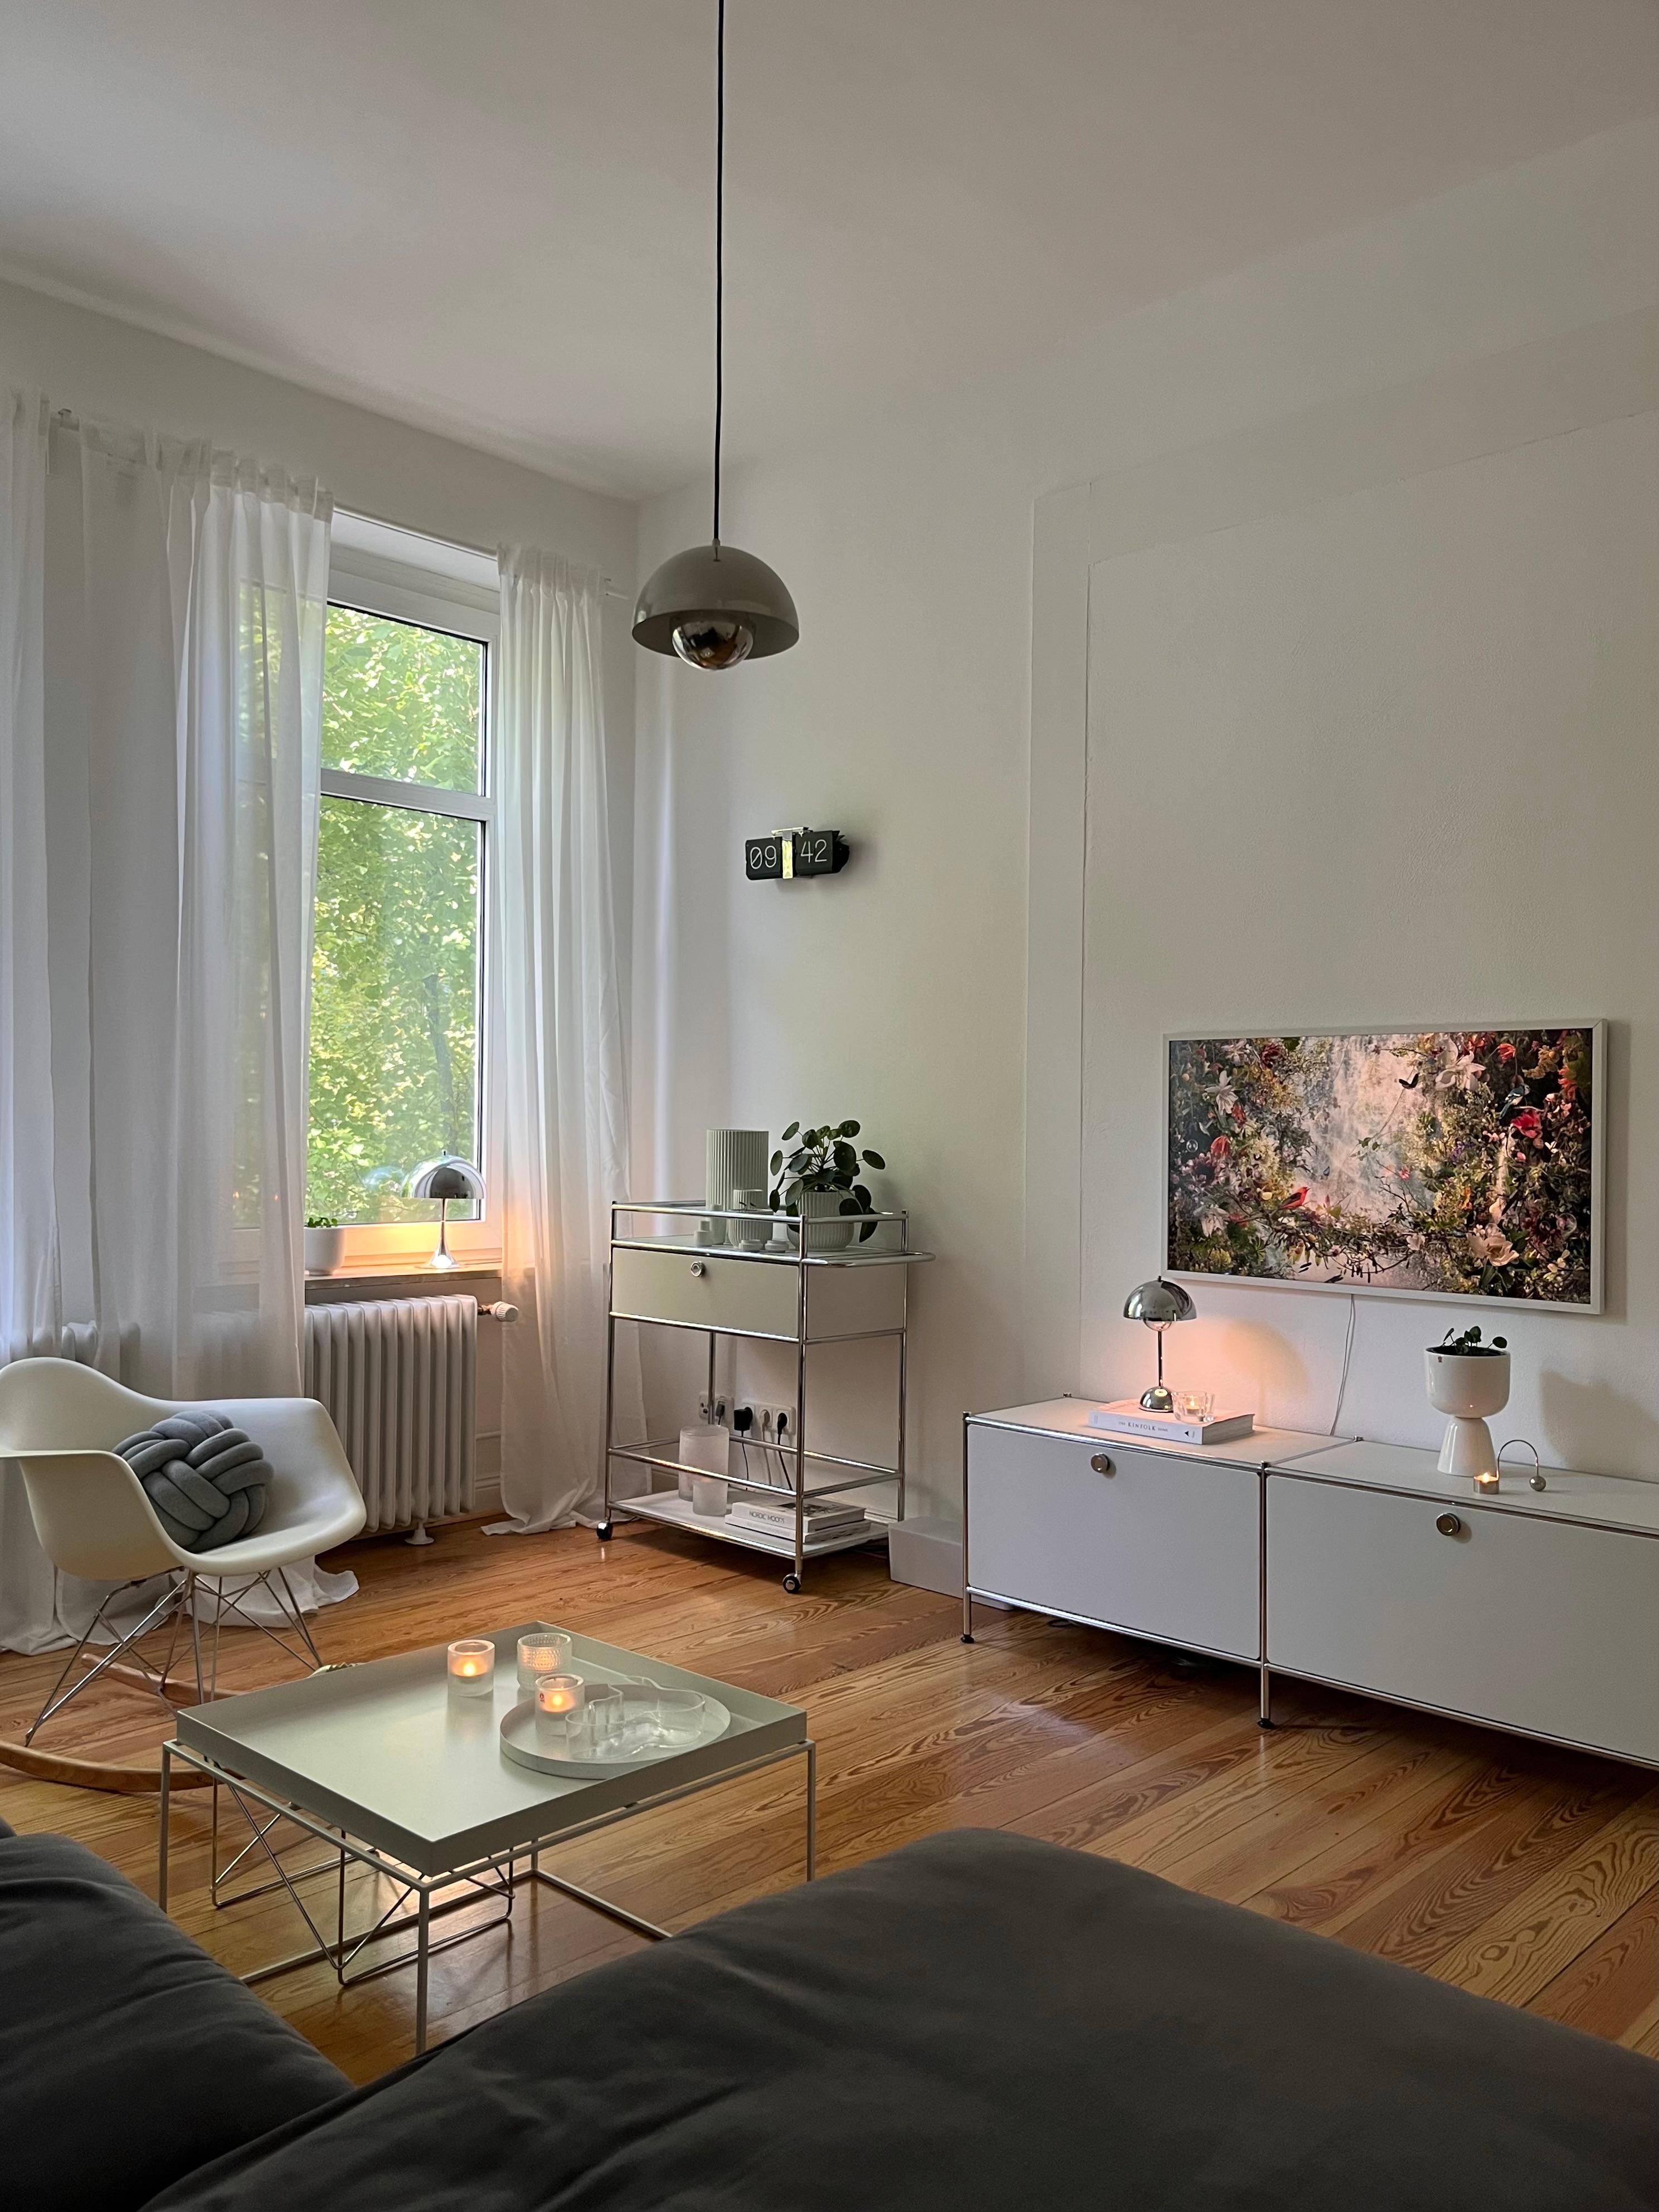 #wohnzimmer #altbauwohnung #skandinavischwohnen #interior